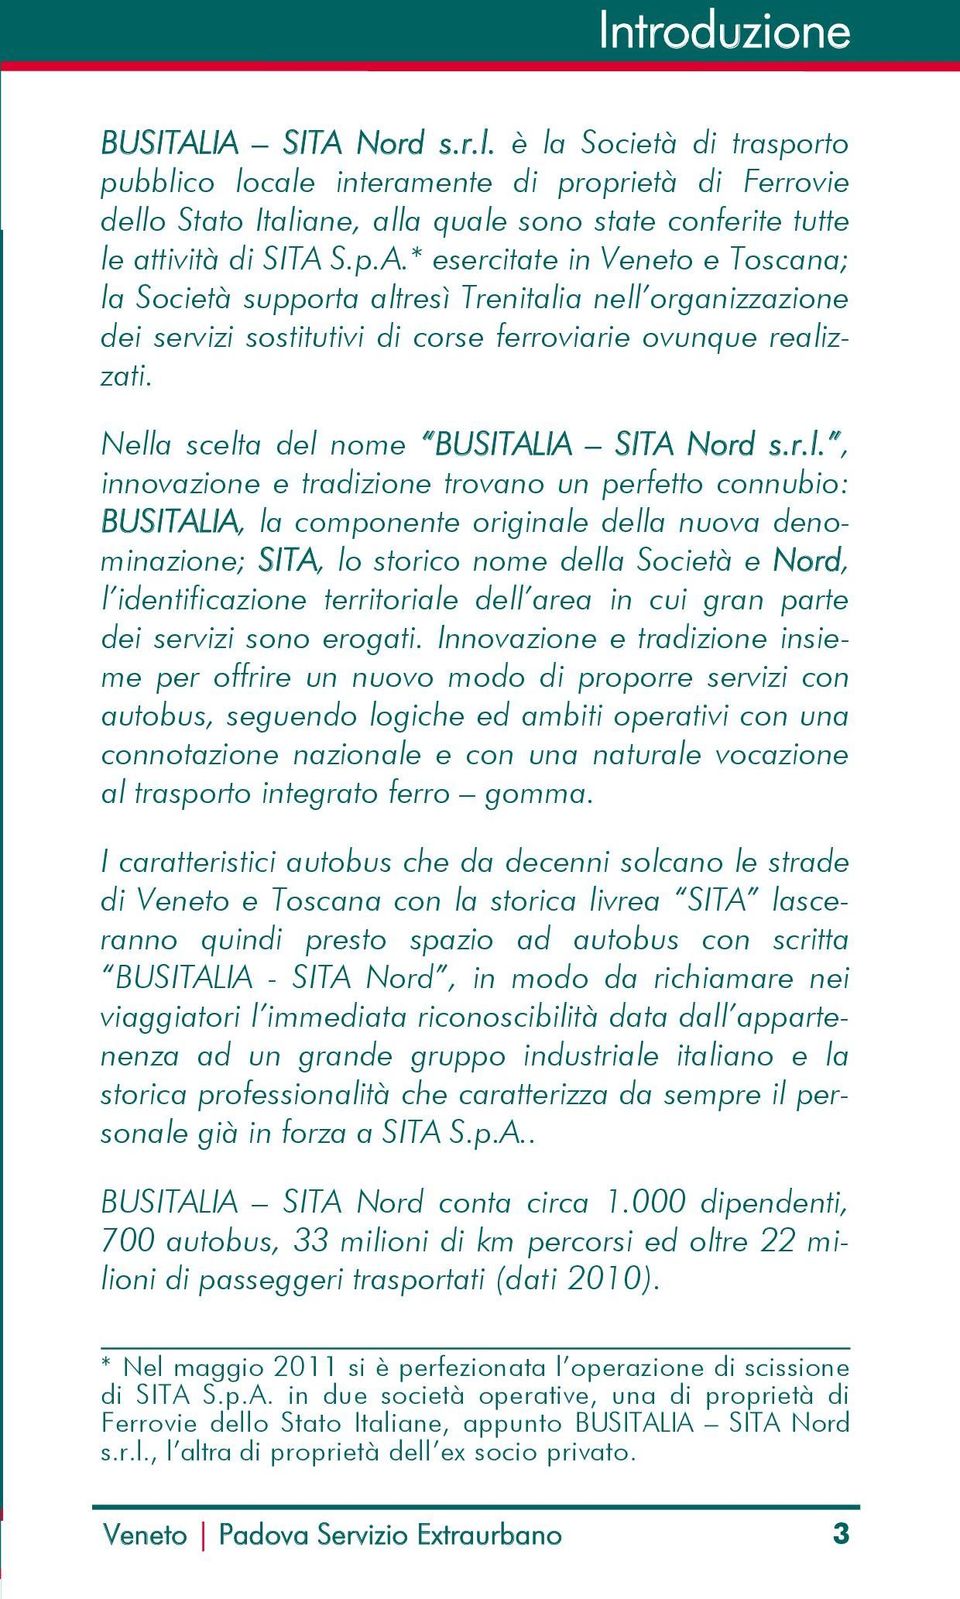 S.p.A.* esercitate in Veneto e Toscana; la Società supporta altresì Trenitalia nell organizzazione dei servizi sostitutivi di corse ferroviarie ovunque realizzati.